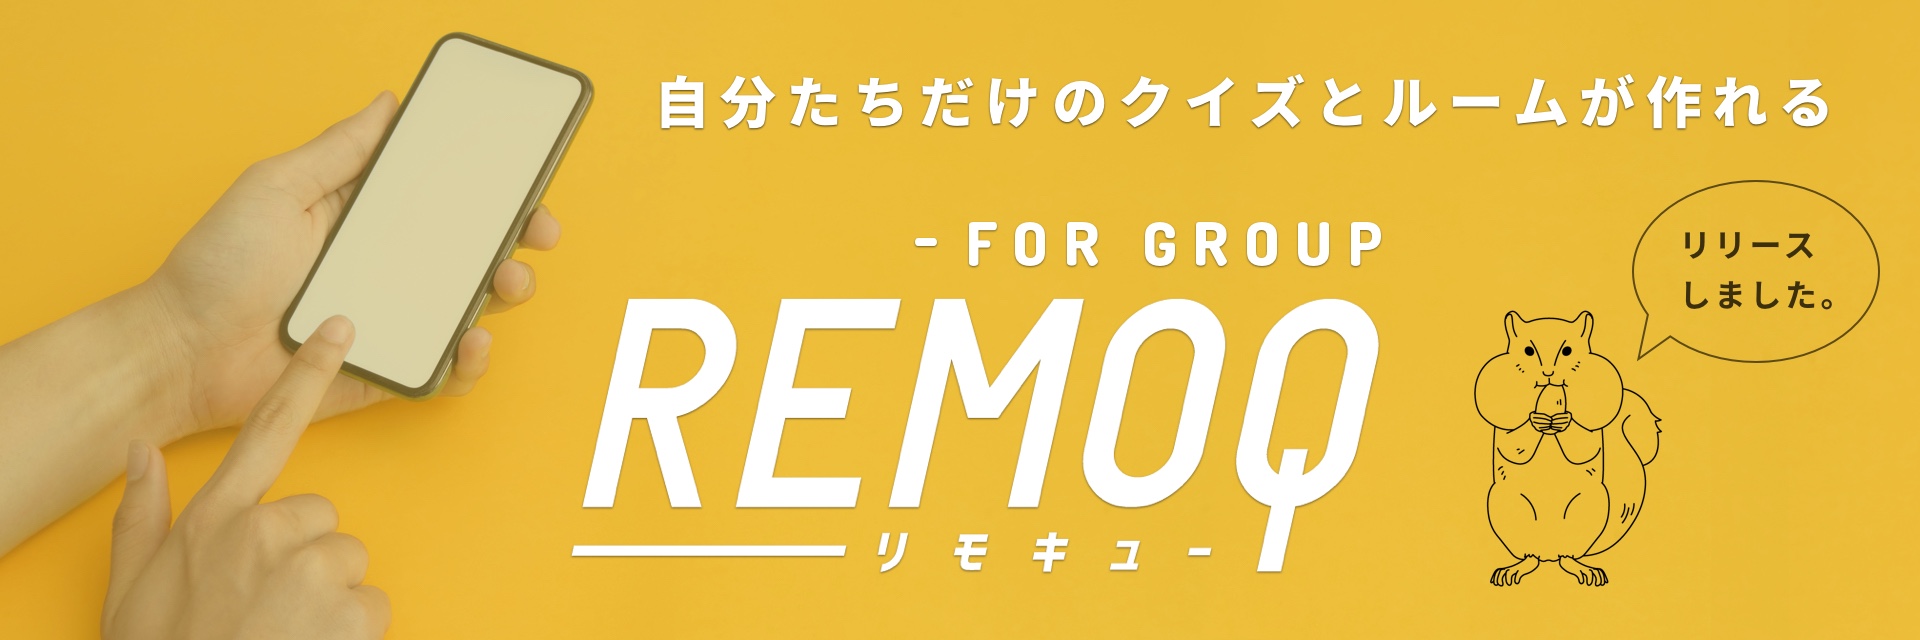 REMOQ for Group　リリースしました。